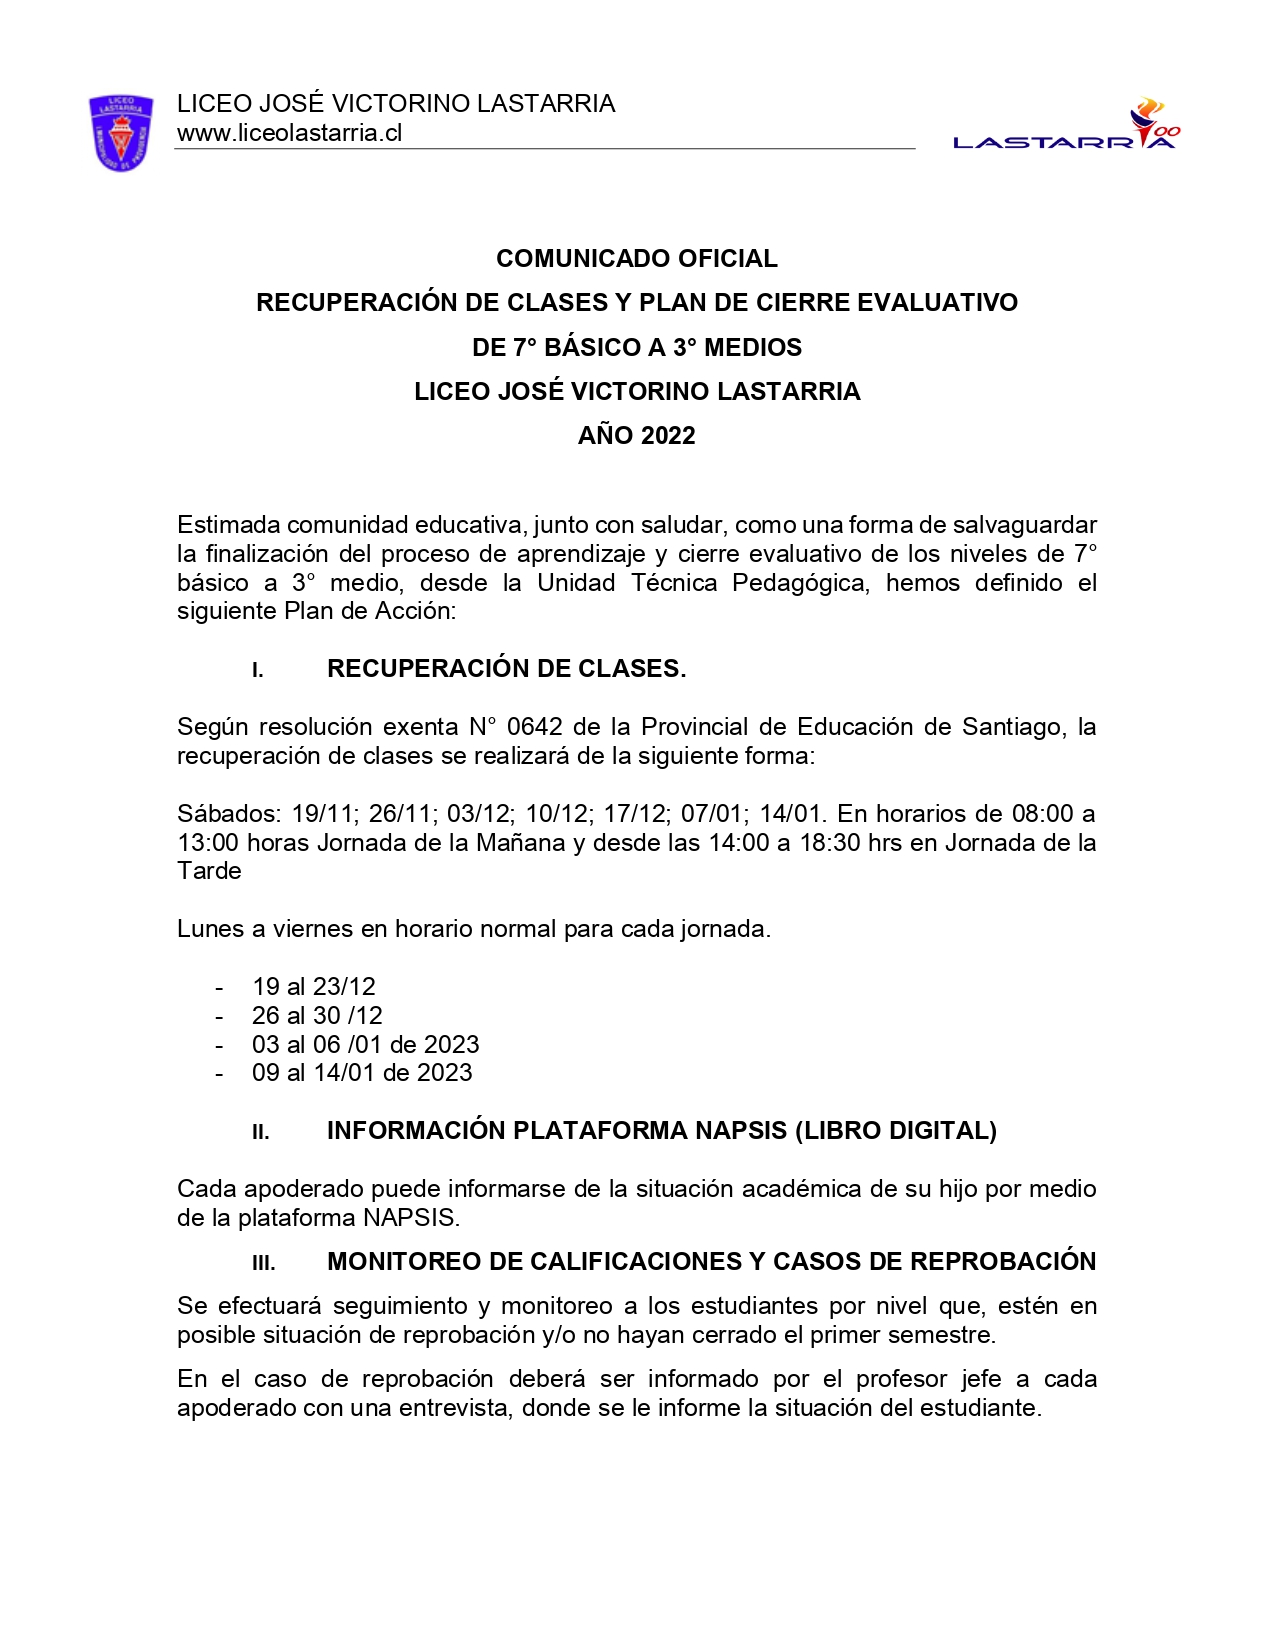 PLAN DE ACCIN CIERRE EVALUATIVO DE ESTUDINATES DE 7 a 3 Medio 2 page 0001